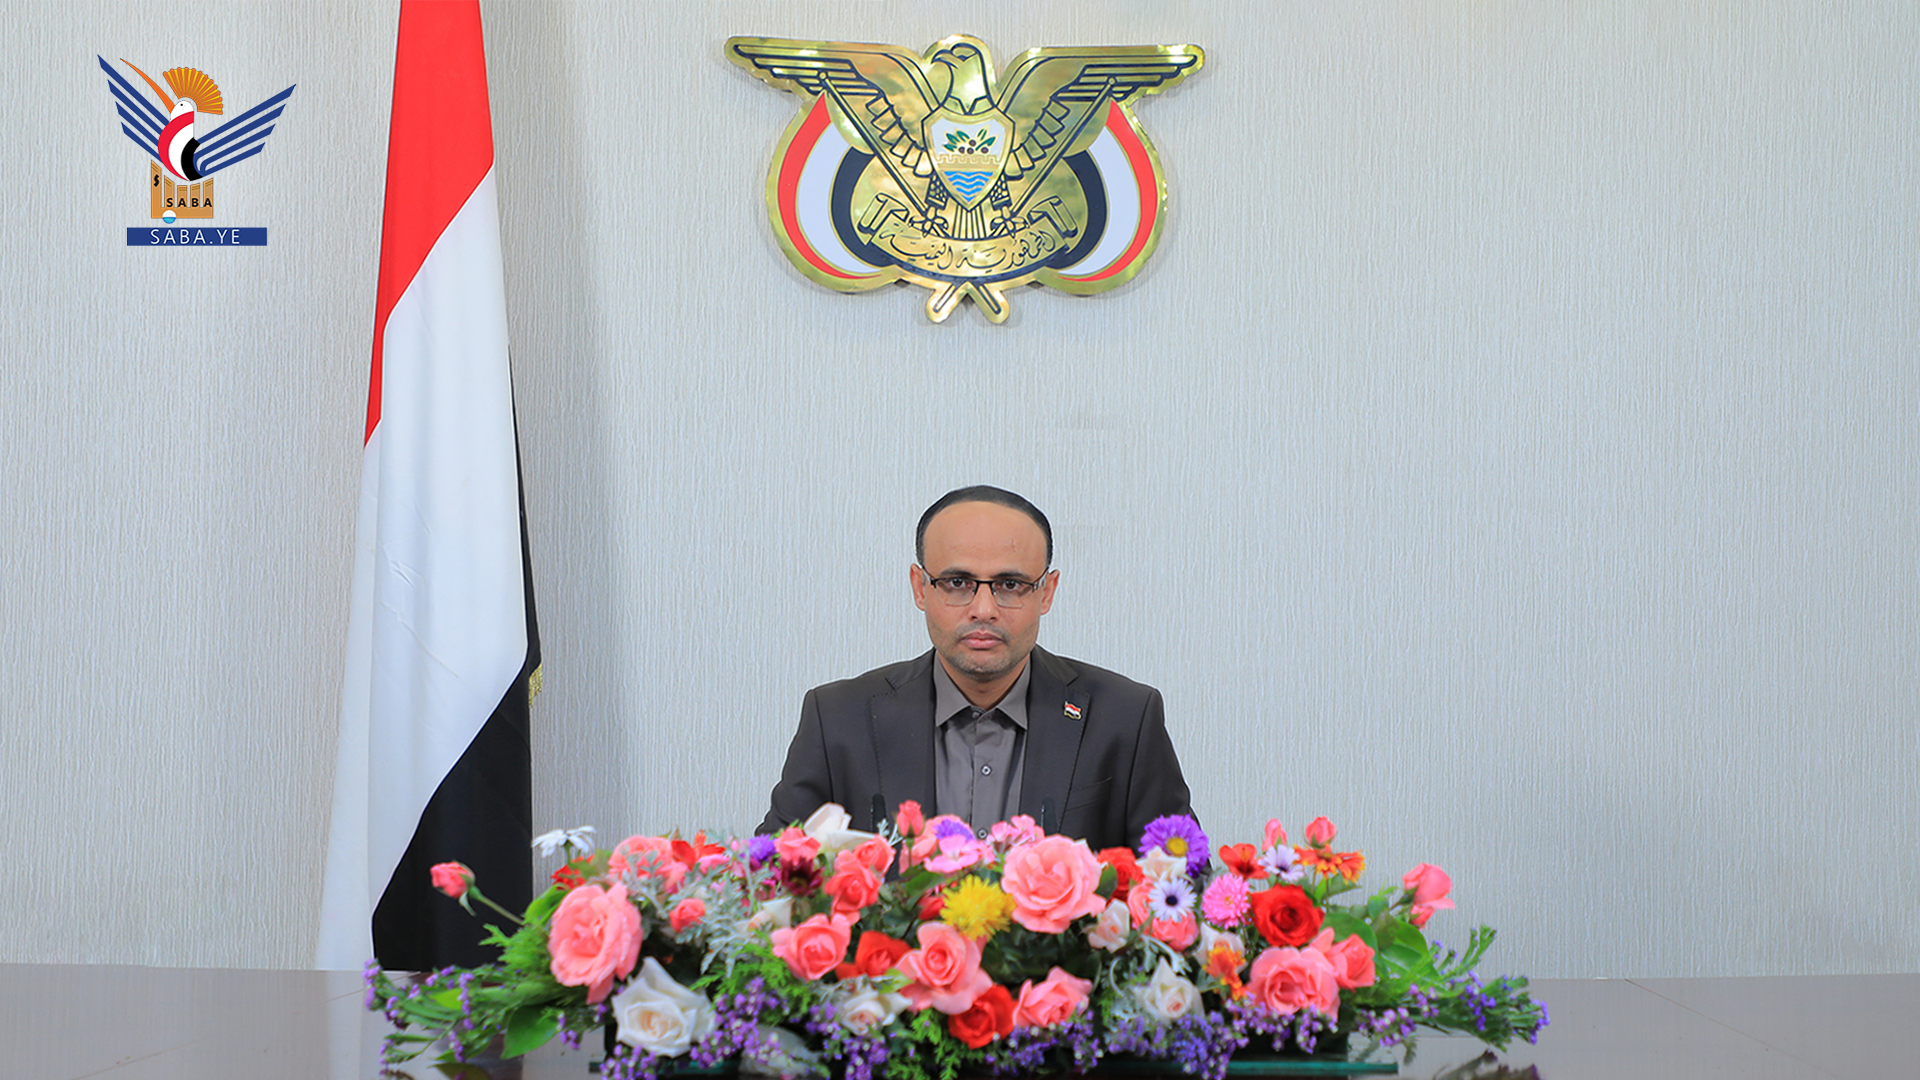 El presidente Al-Mashat pronuncia un importante discurso con motivo del 33.º aniversario del establecimiento de la unidad yemeníta